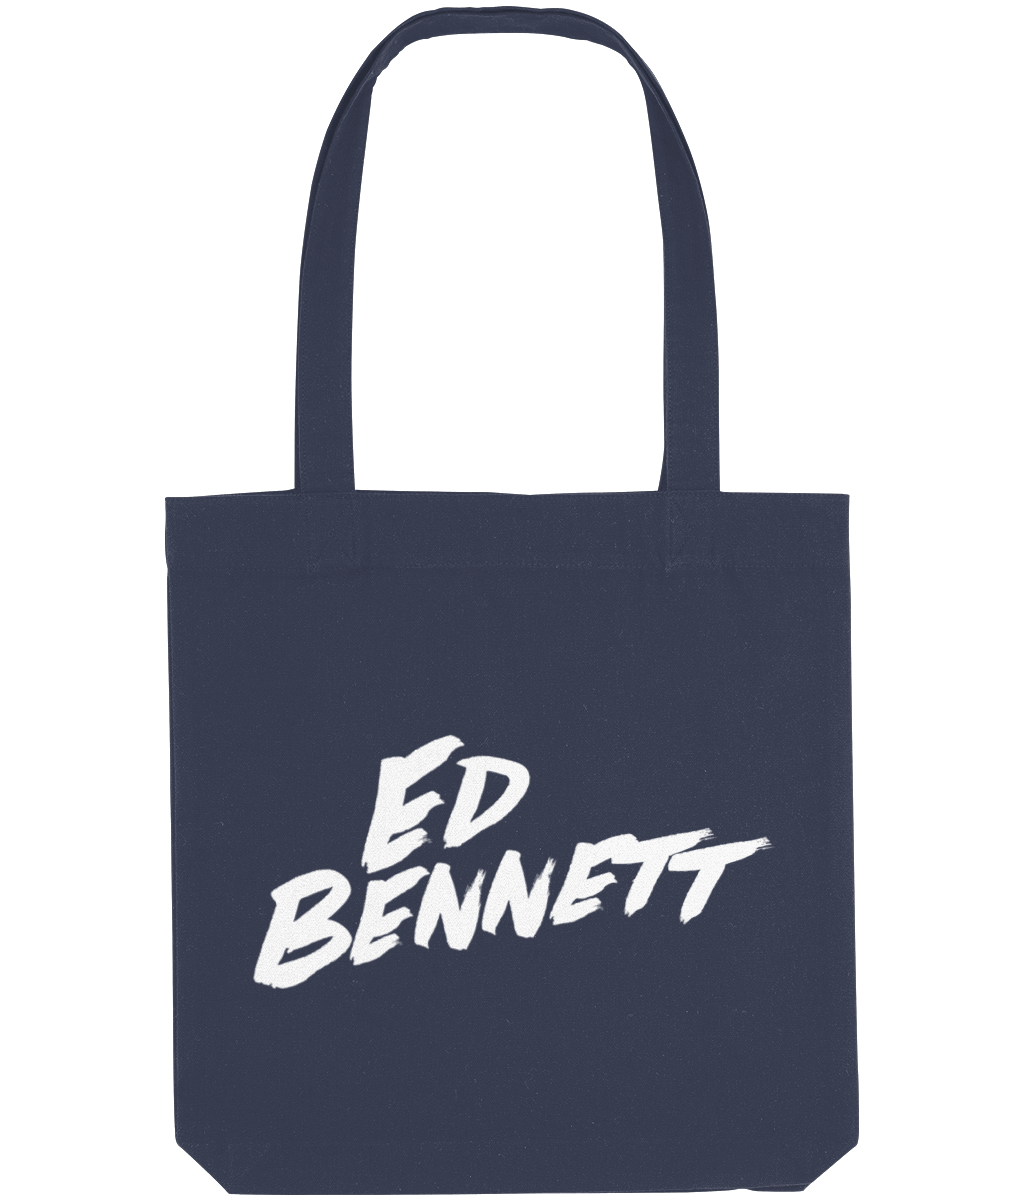 Ed Bennett Tote Bag